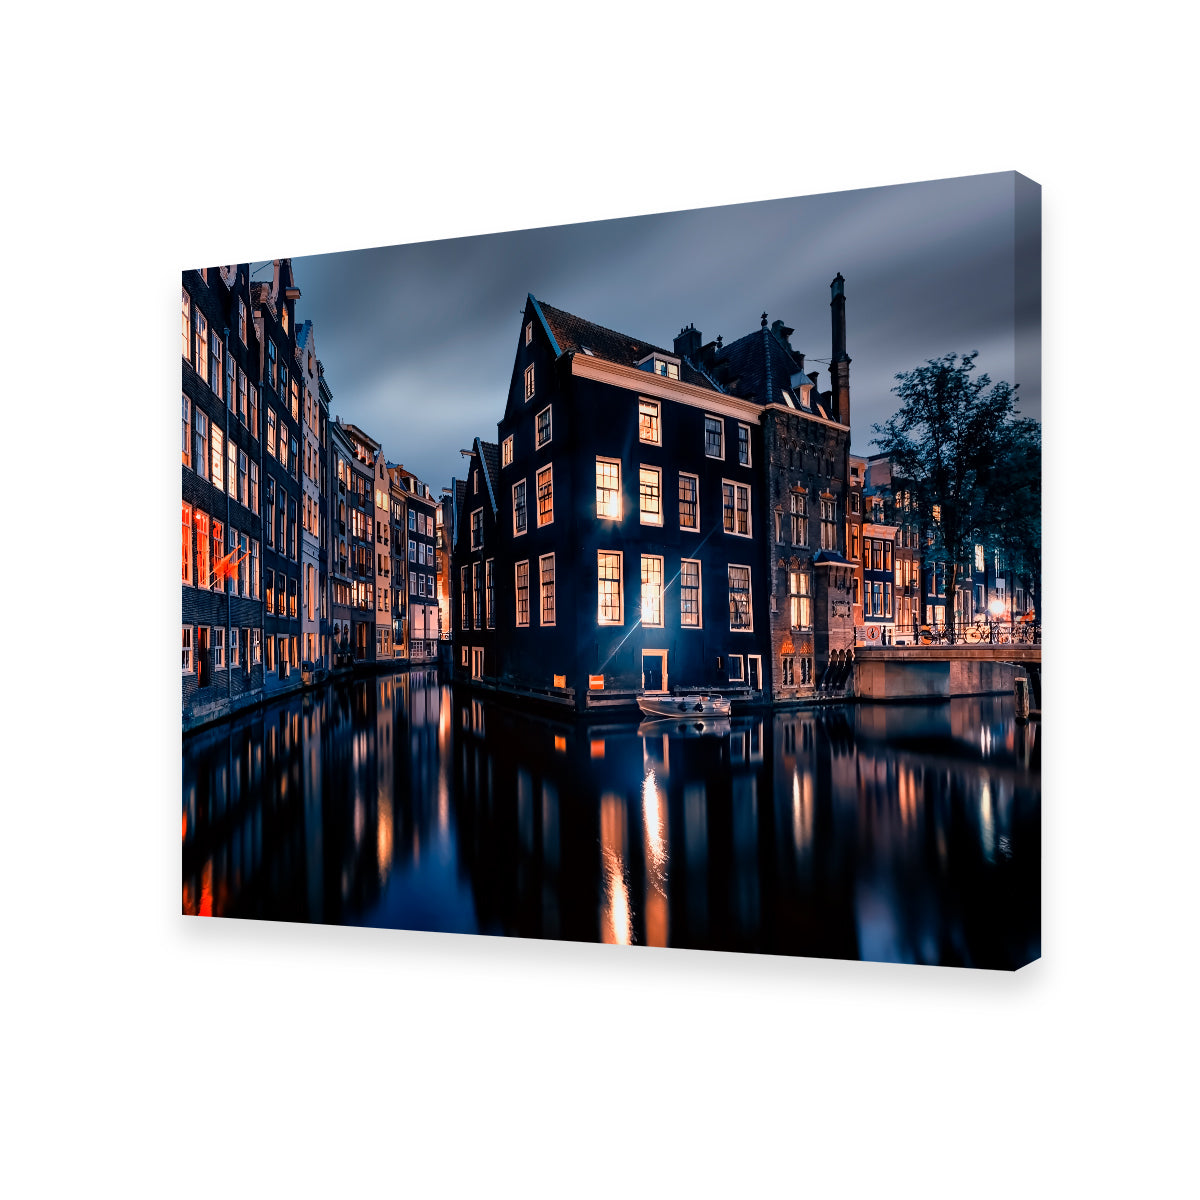 Amsterdam By Night